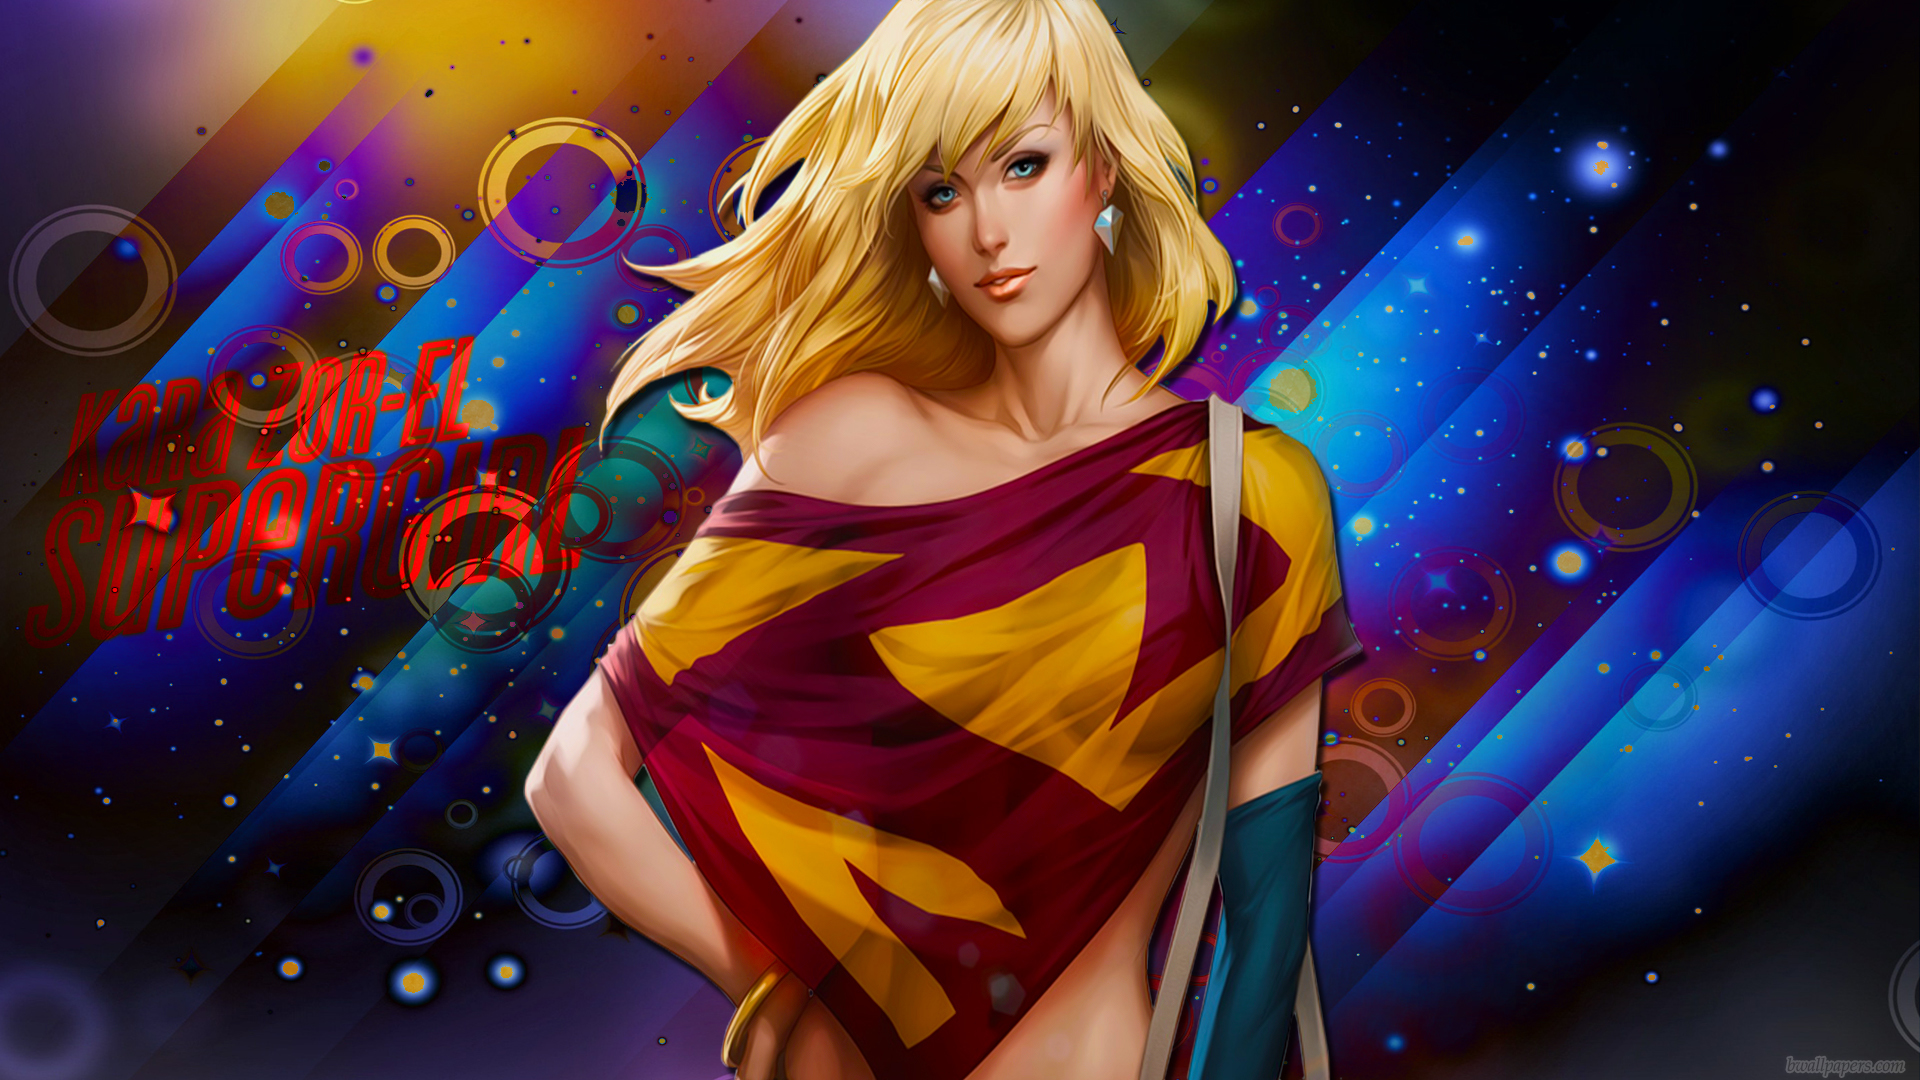 Supergirl Wallpapers Pictures - WallpaperSafari